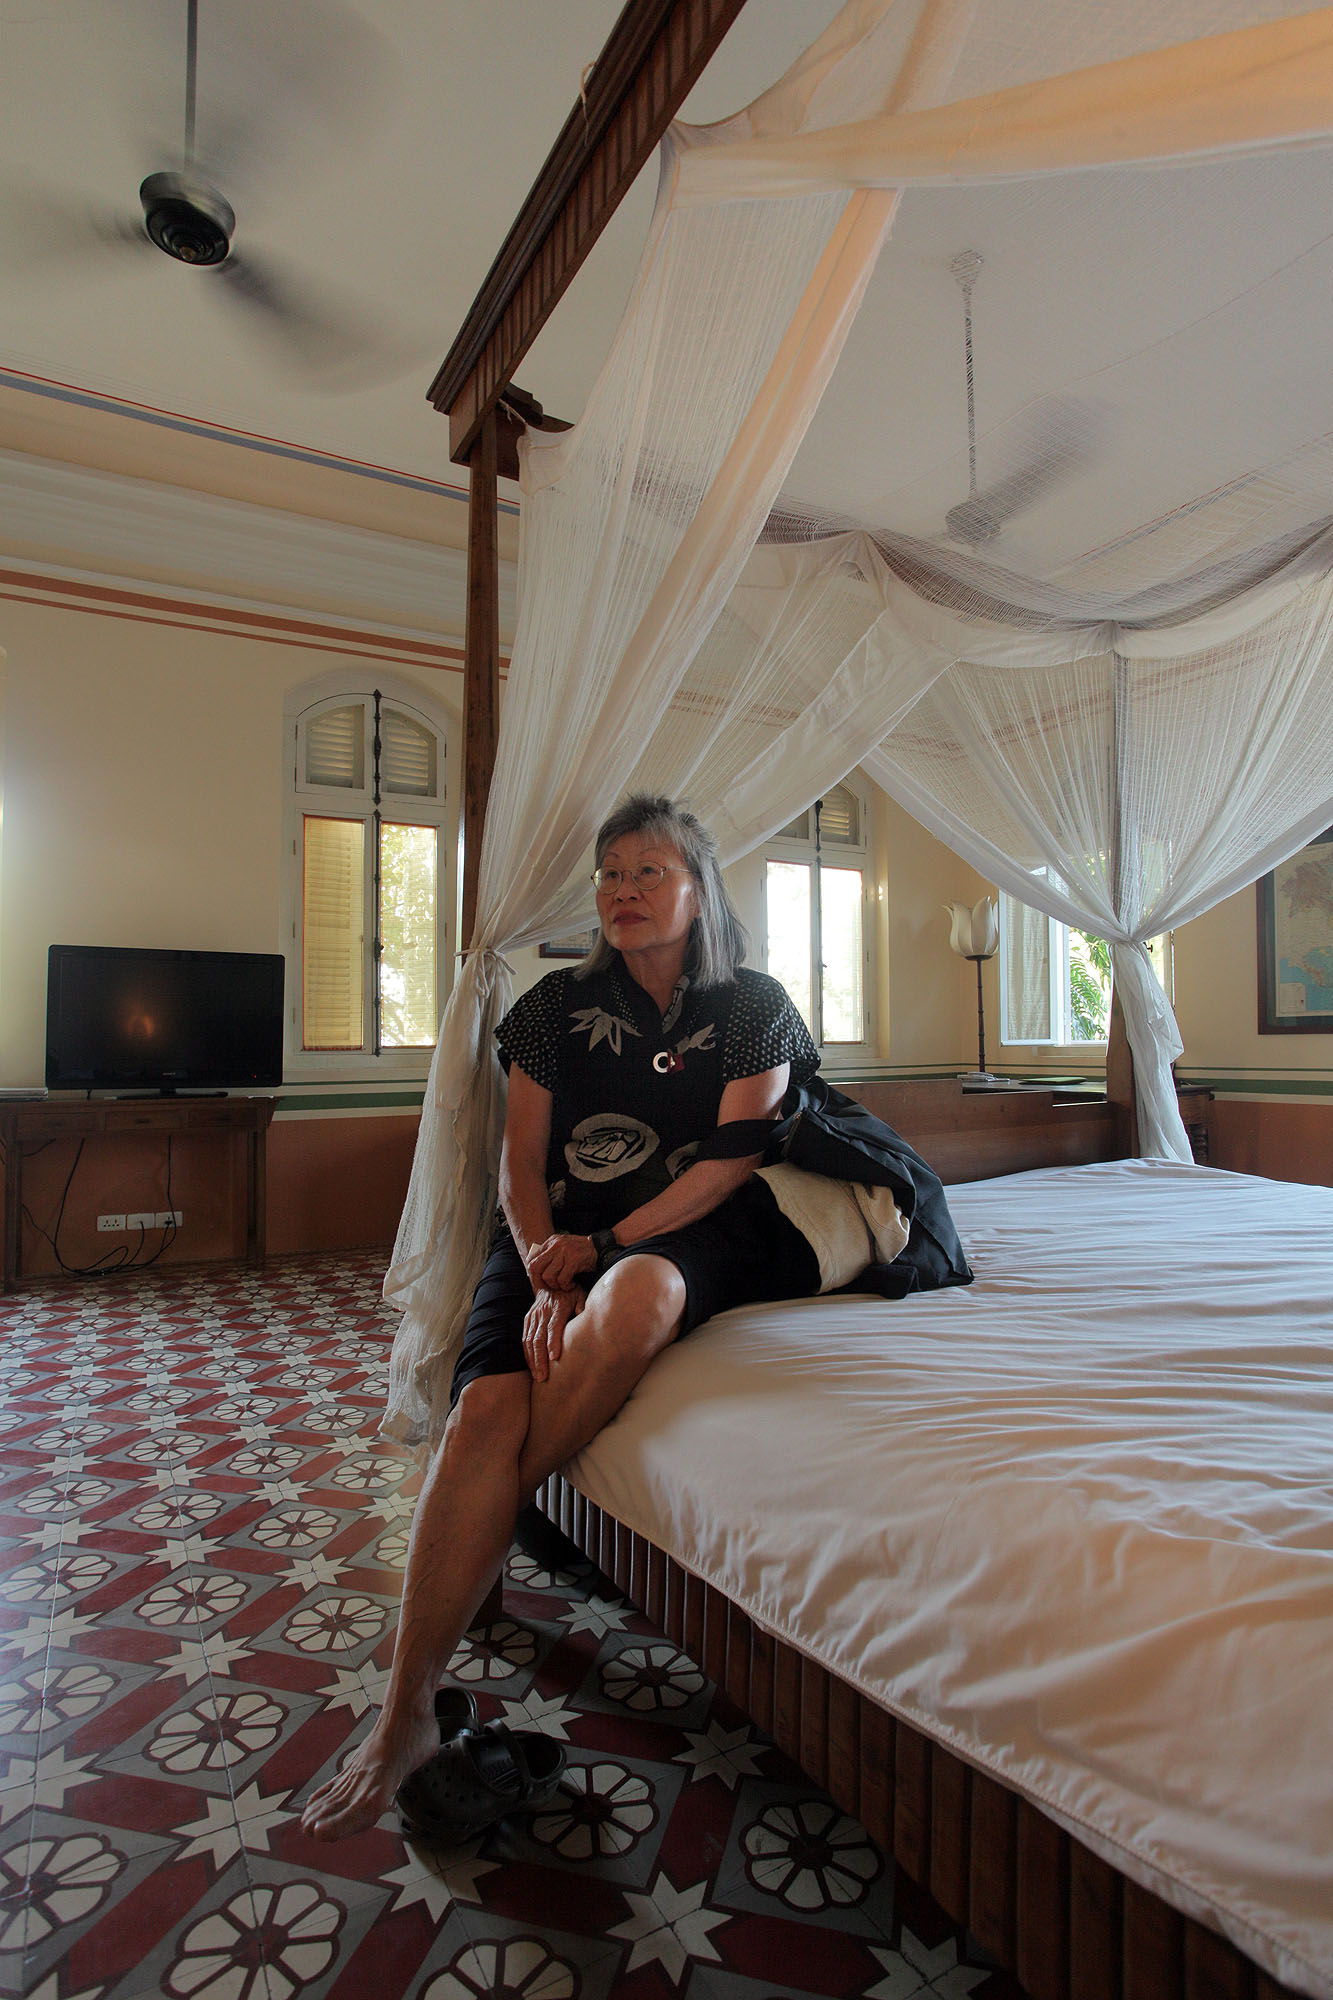 bill-hocker-mui-la-vill-hotel-battambang-cambodia-2010